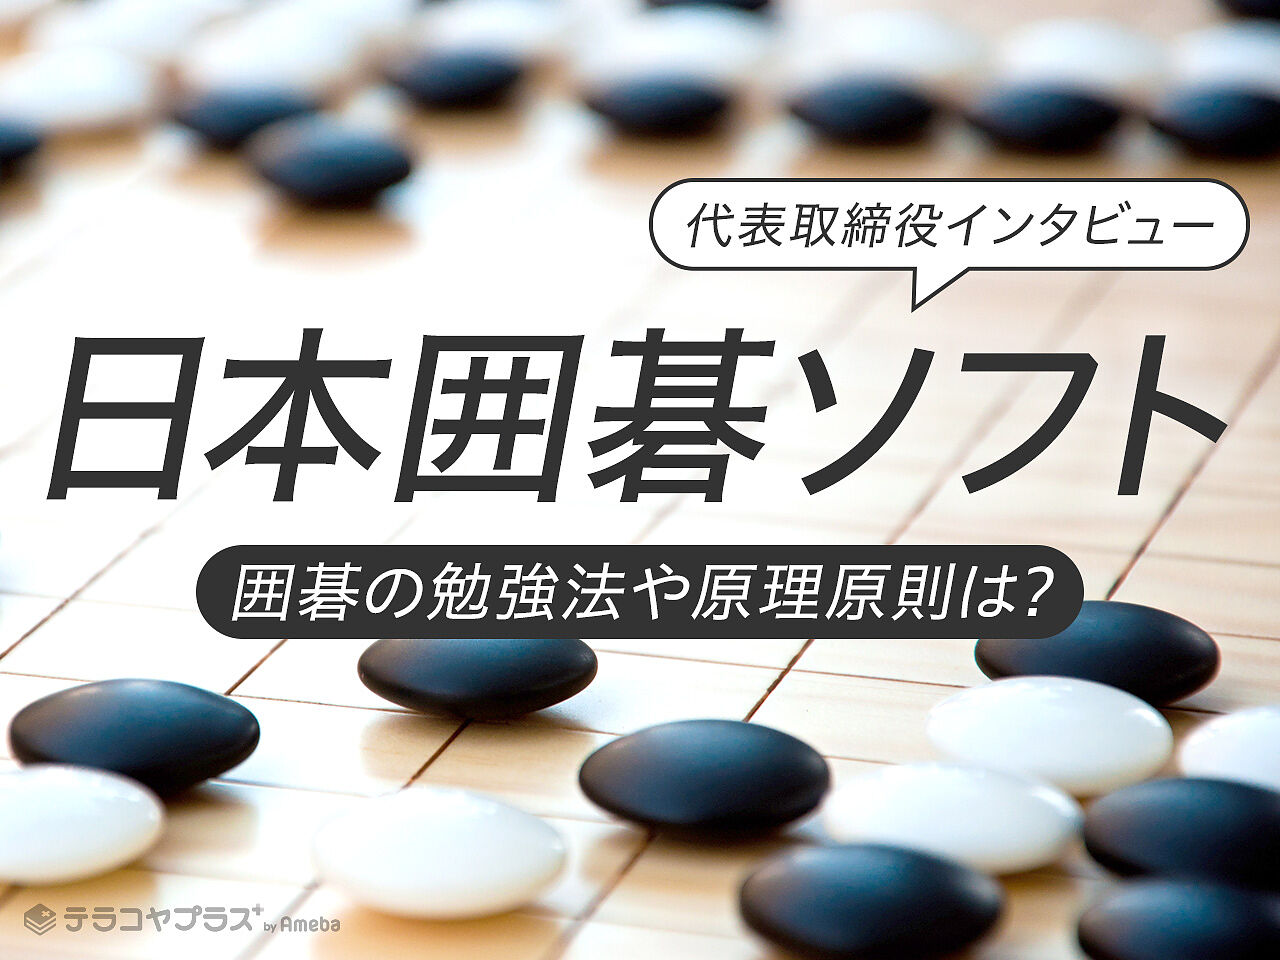 「日本囲碁ソフト」代表取締役インタビュー！囲碁の勉強法や原理原則について聞いてみたの画像